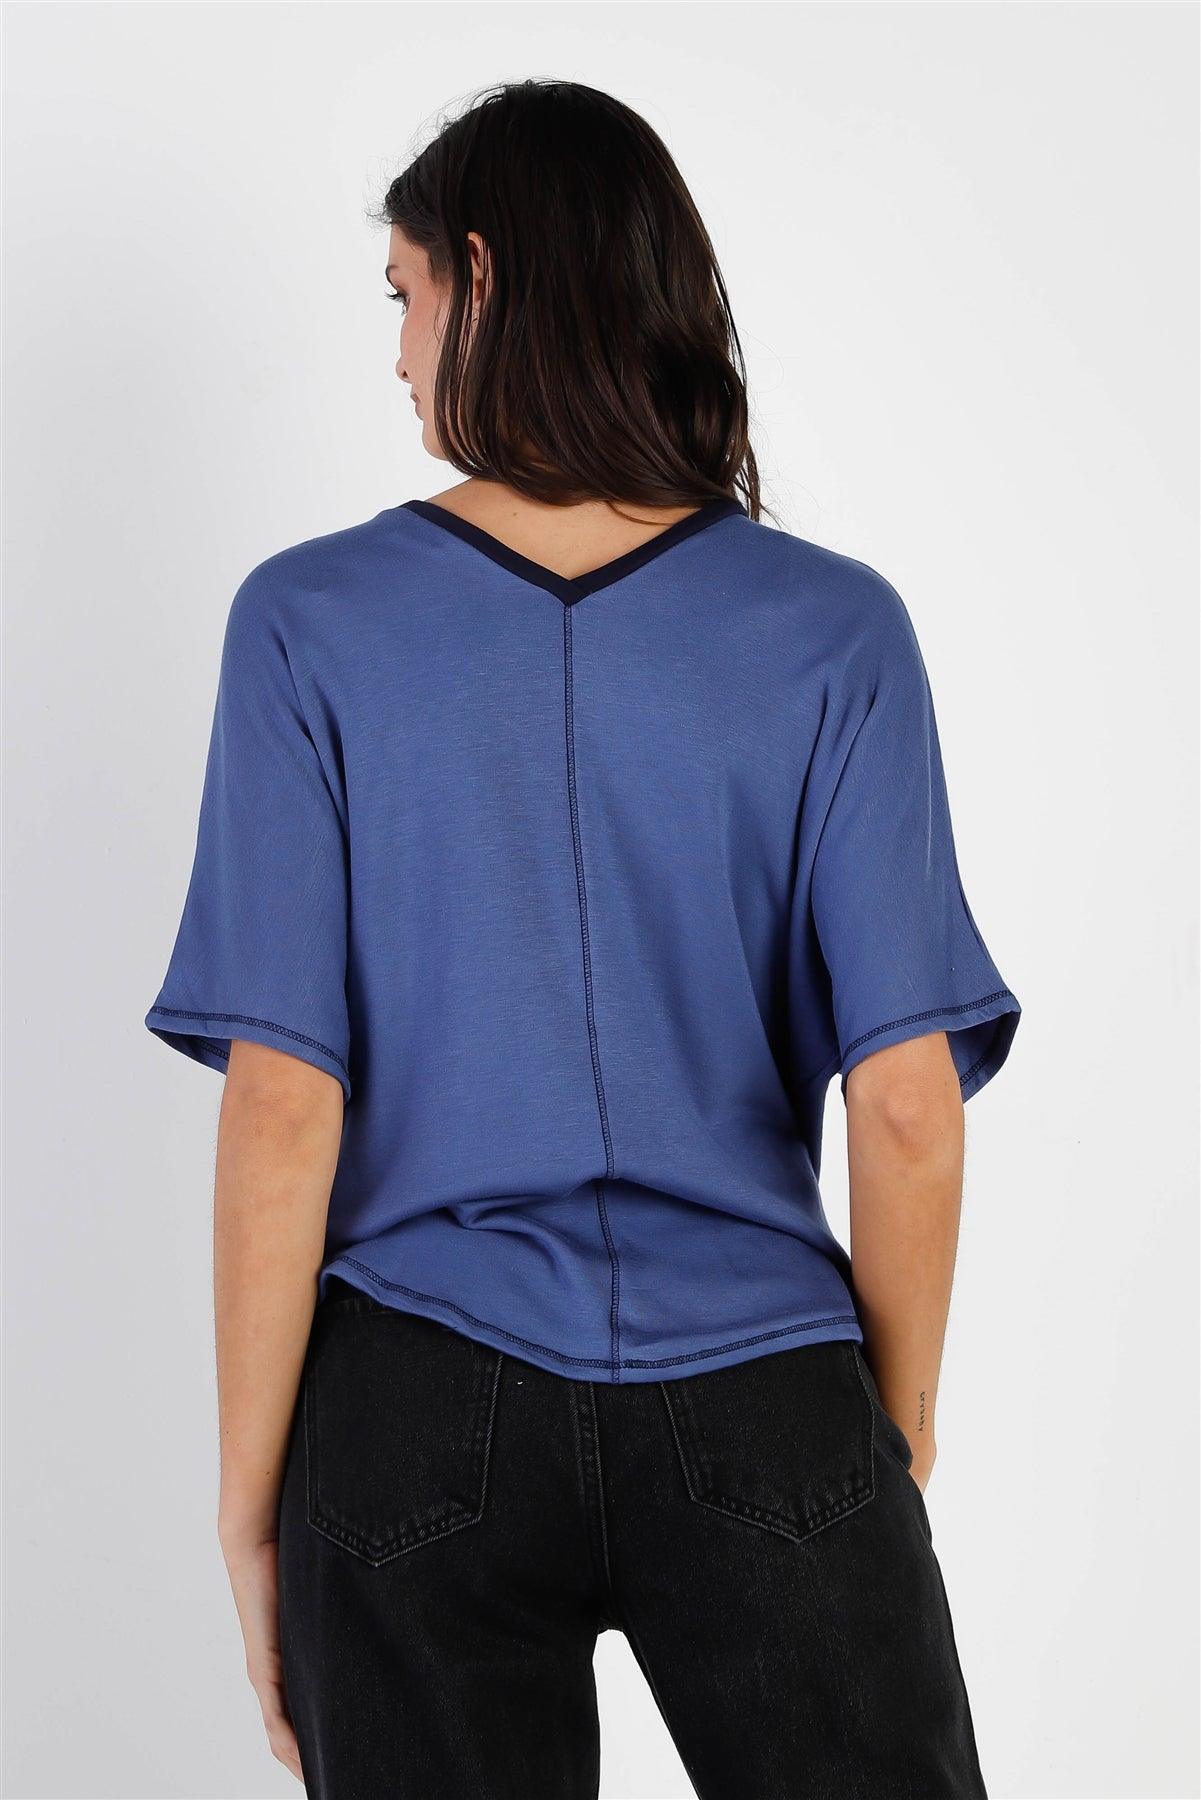 Denim Blue Contrast V-Neck Short Sleeve Top /2-2-2